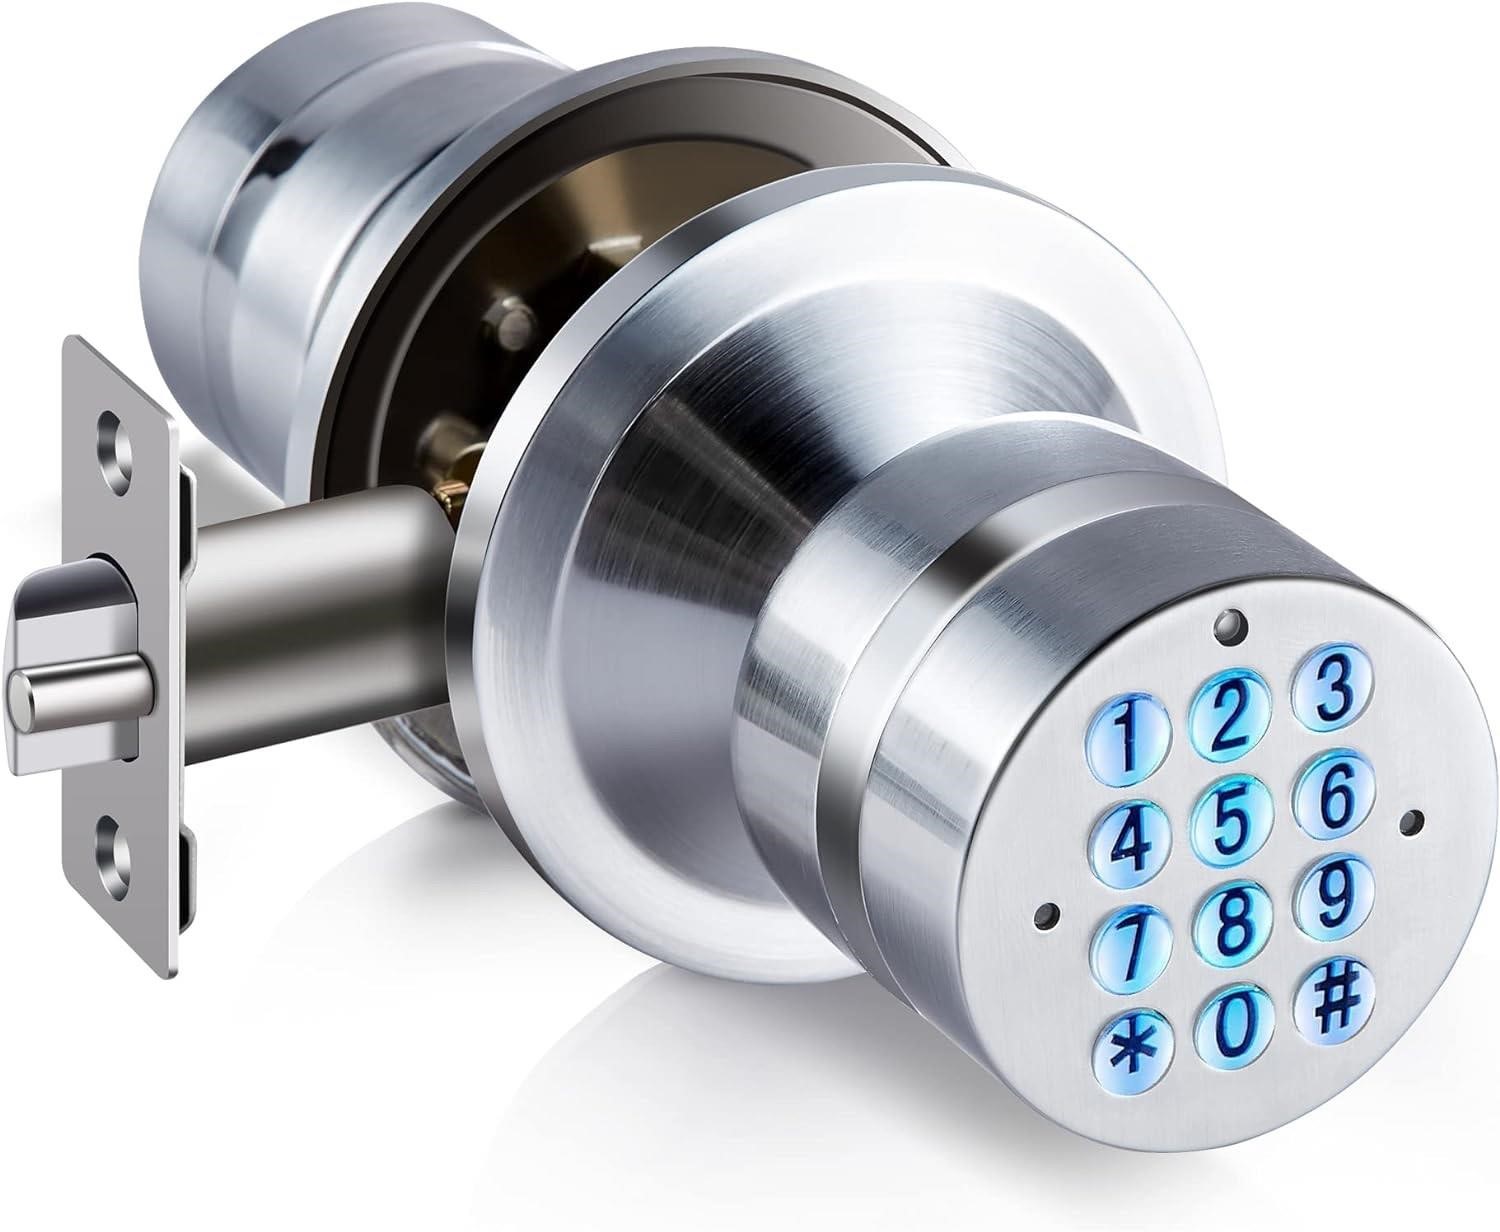 NEW $119 Keyless Smart Door Knob w/Keypad